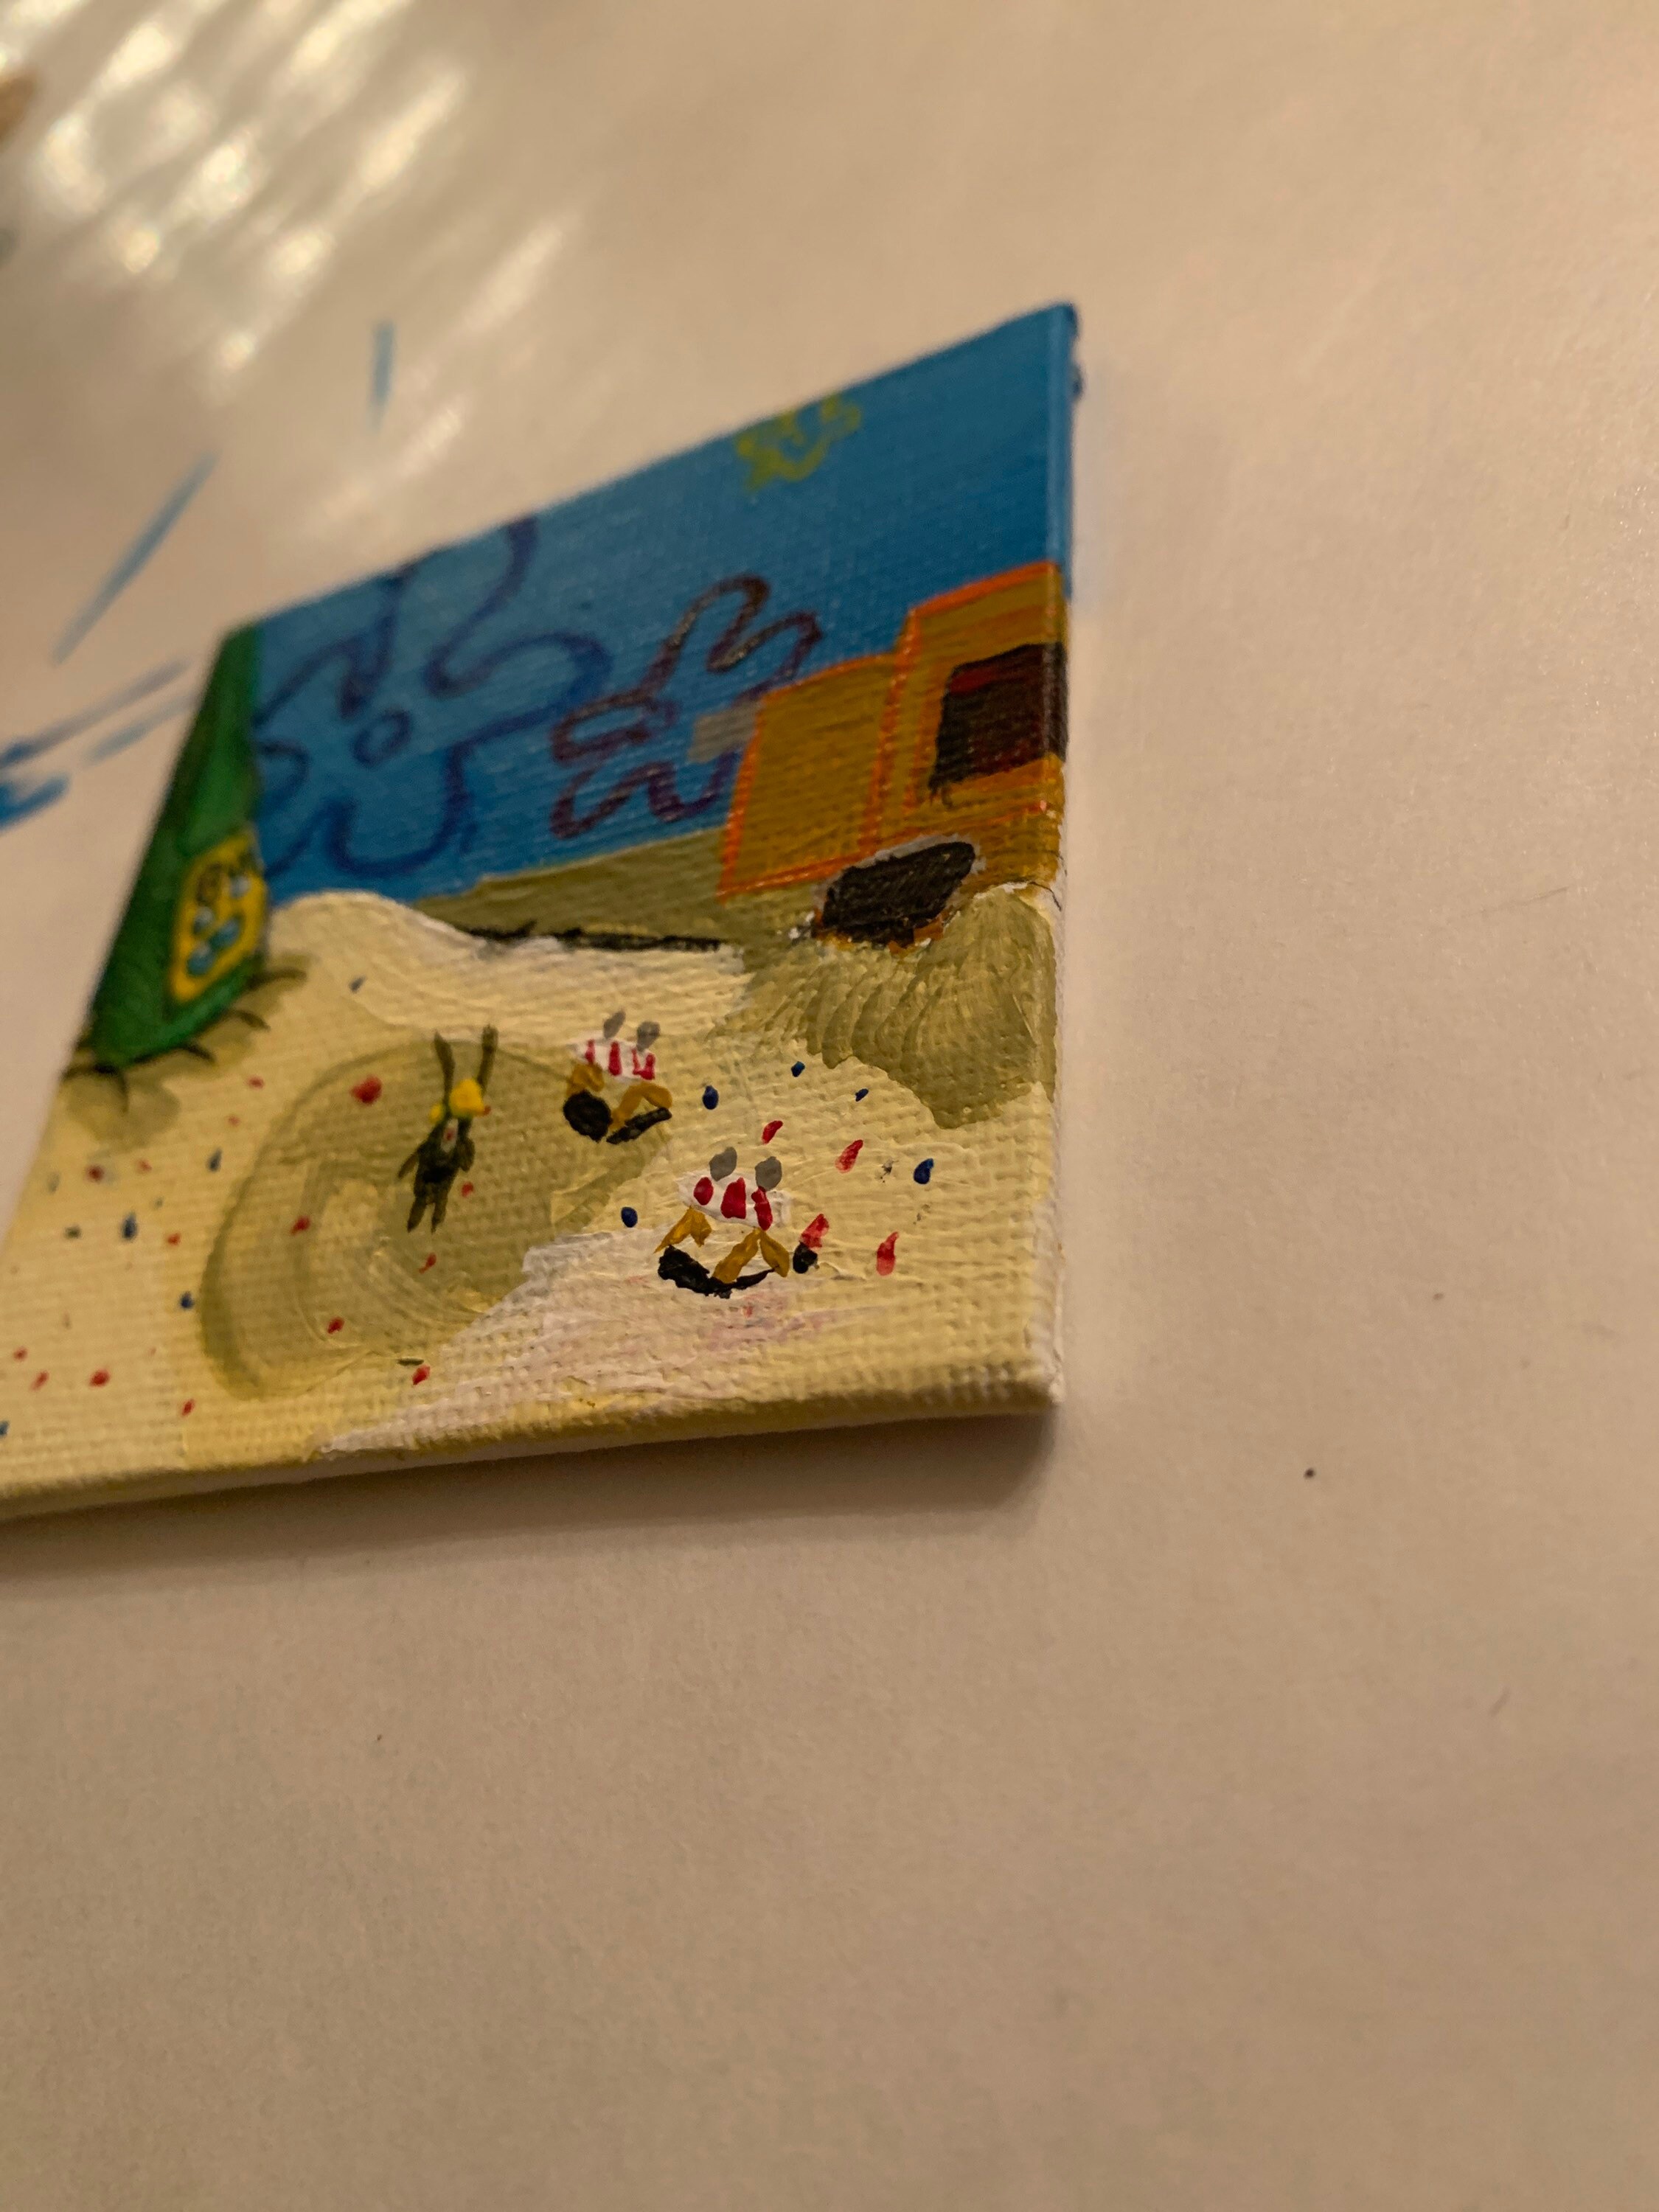 I am small plankton painting | Etsy